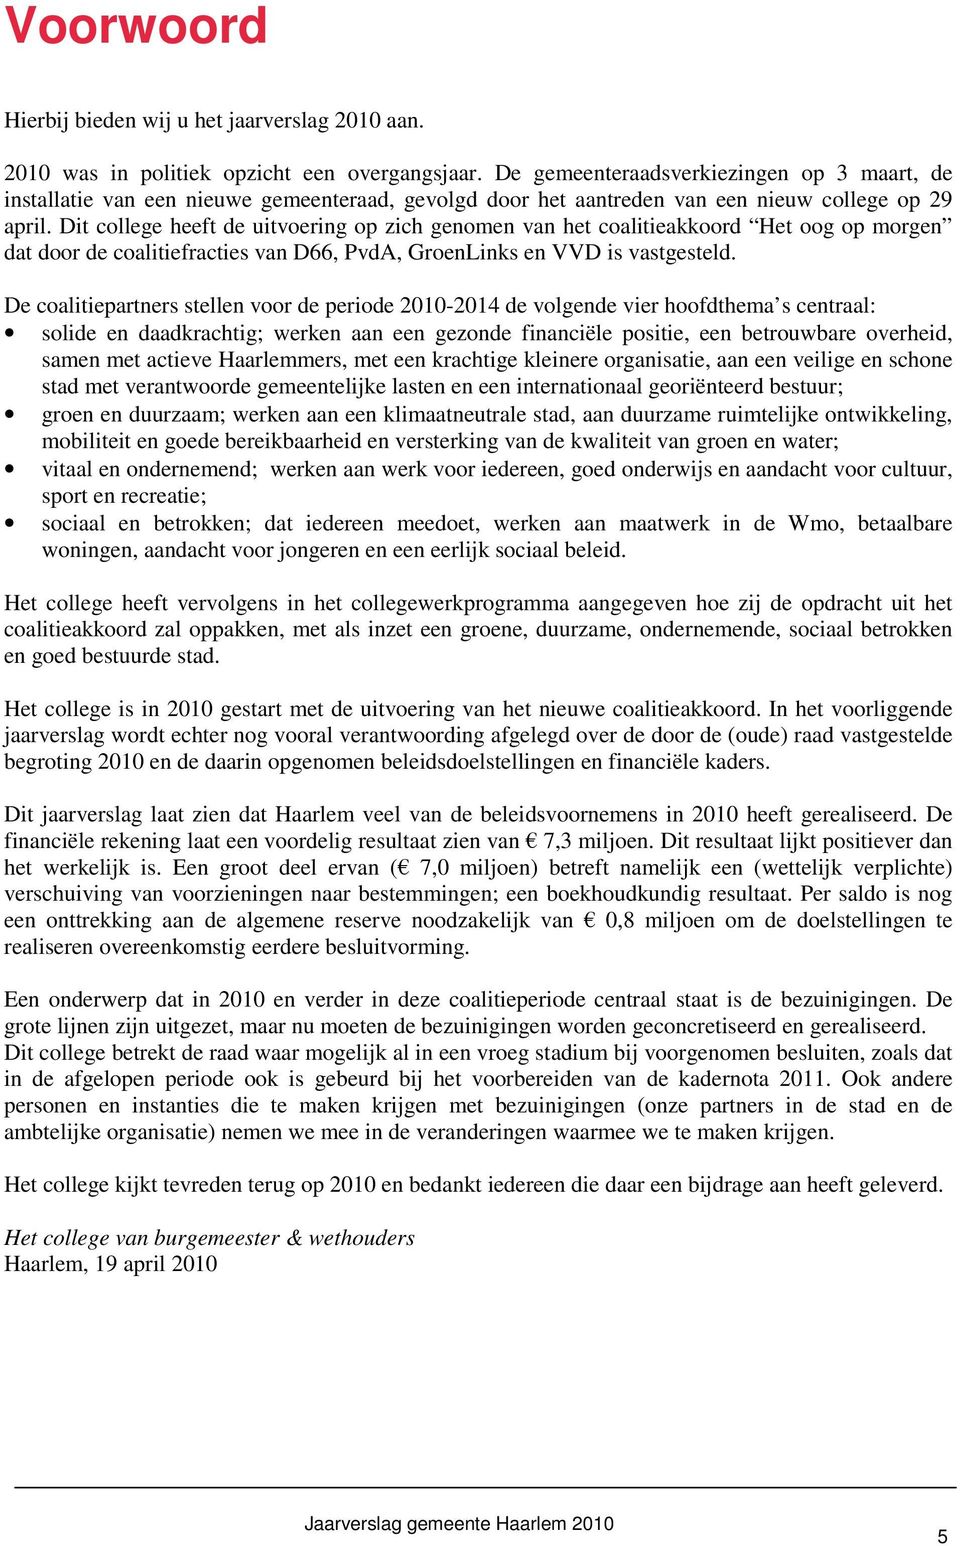 Dit college heeft de uitvoering op zich genomen van het coalitieakkoord Het oog op morgen dat door de coalitiefracties van D66, PvdA, GroenLinks en VVD is vastgesteld.